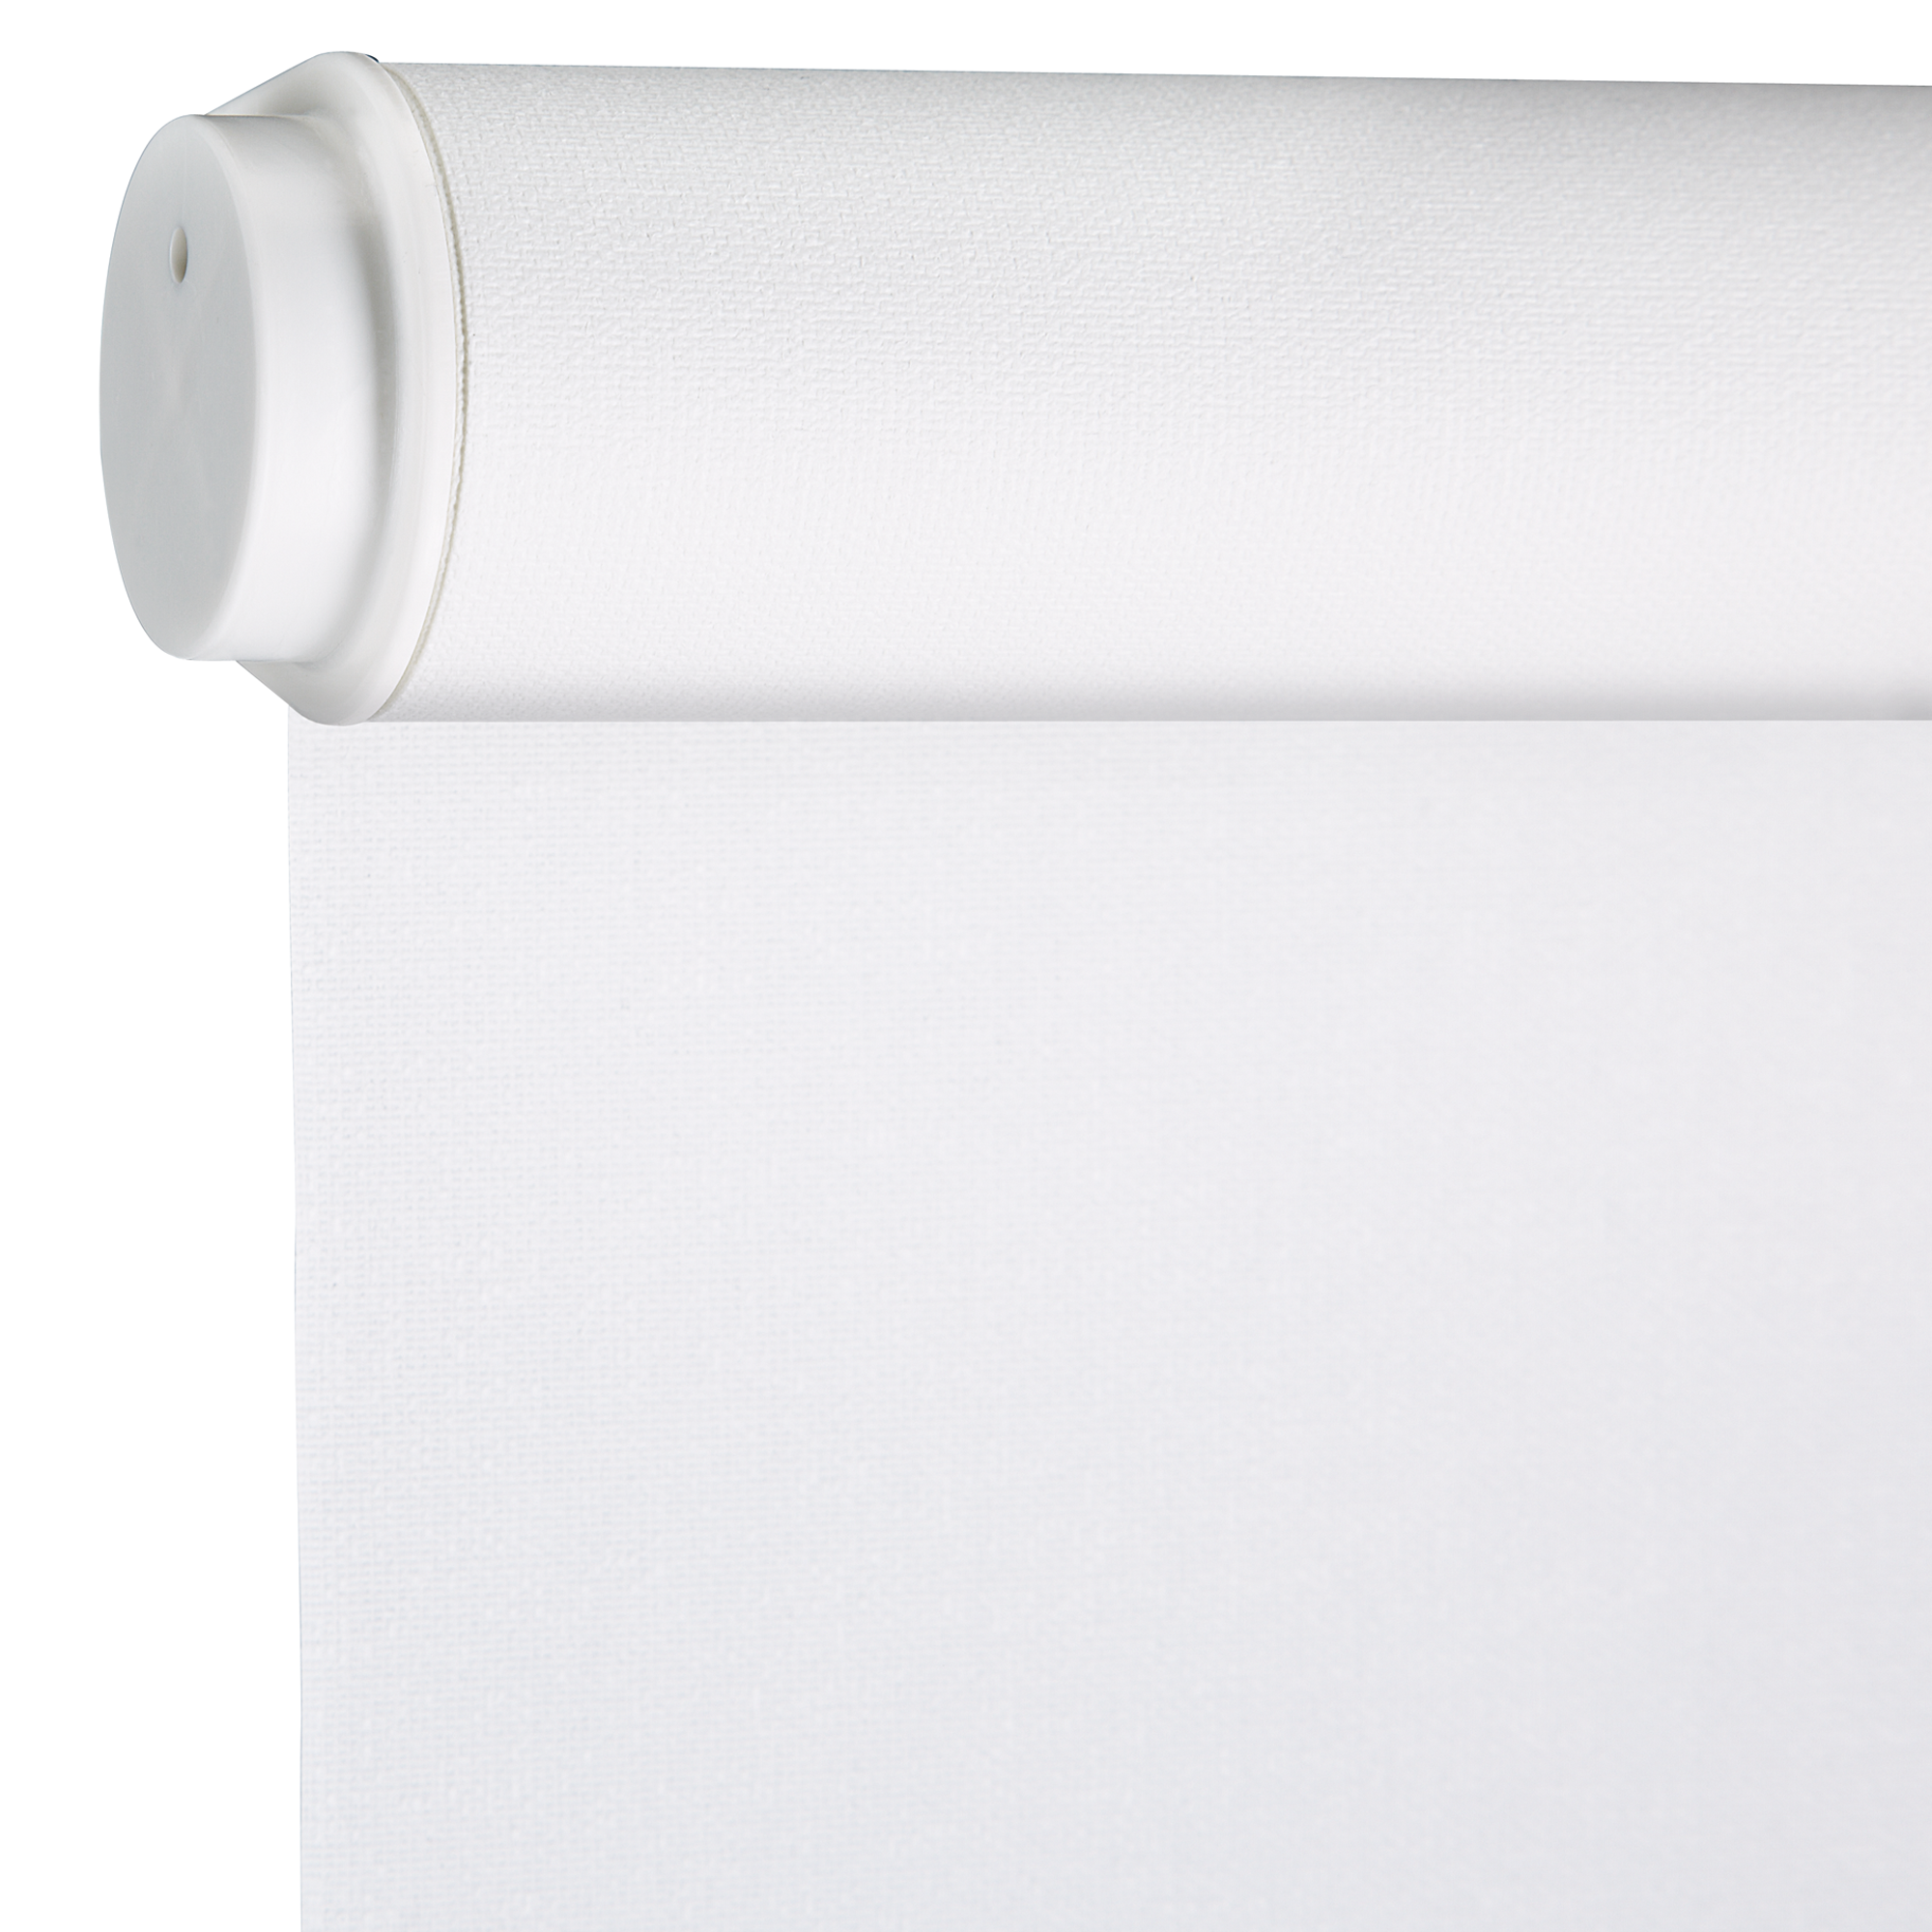 Seitenzug-Rollo 'Lichtdurchlässig' weiß 112 x 180 cm + product picture